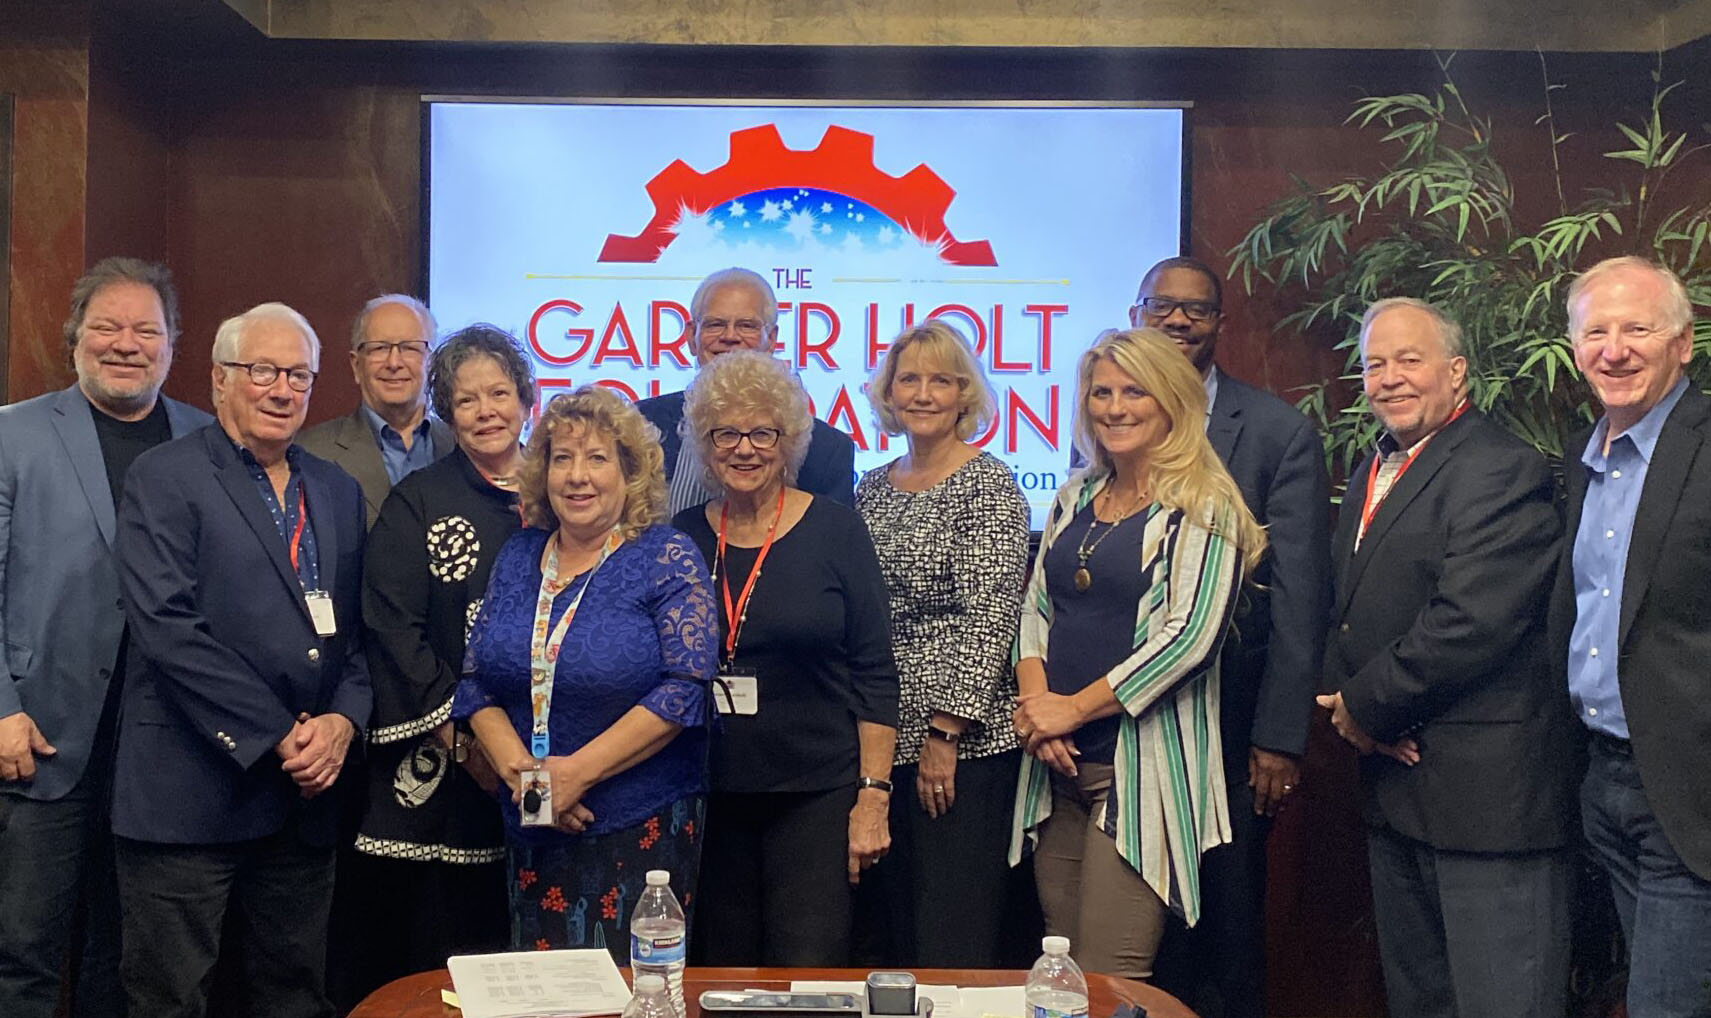 The Garner Holt Foundation Board